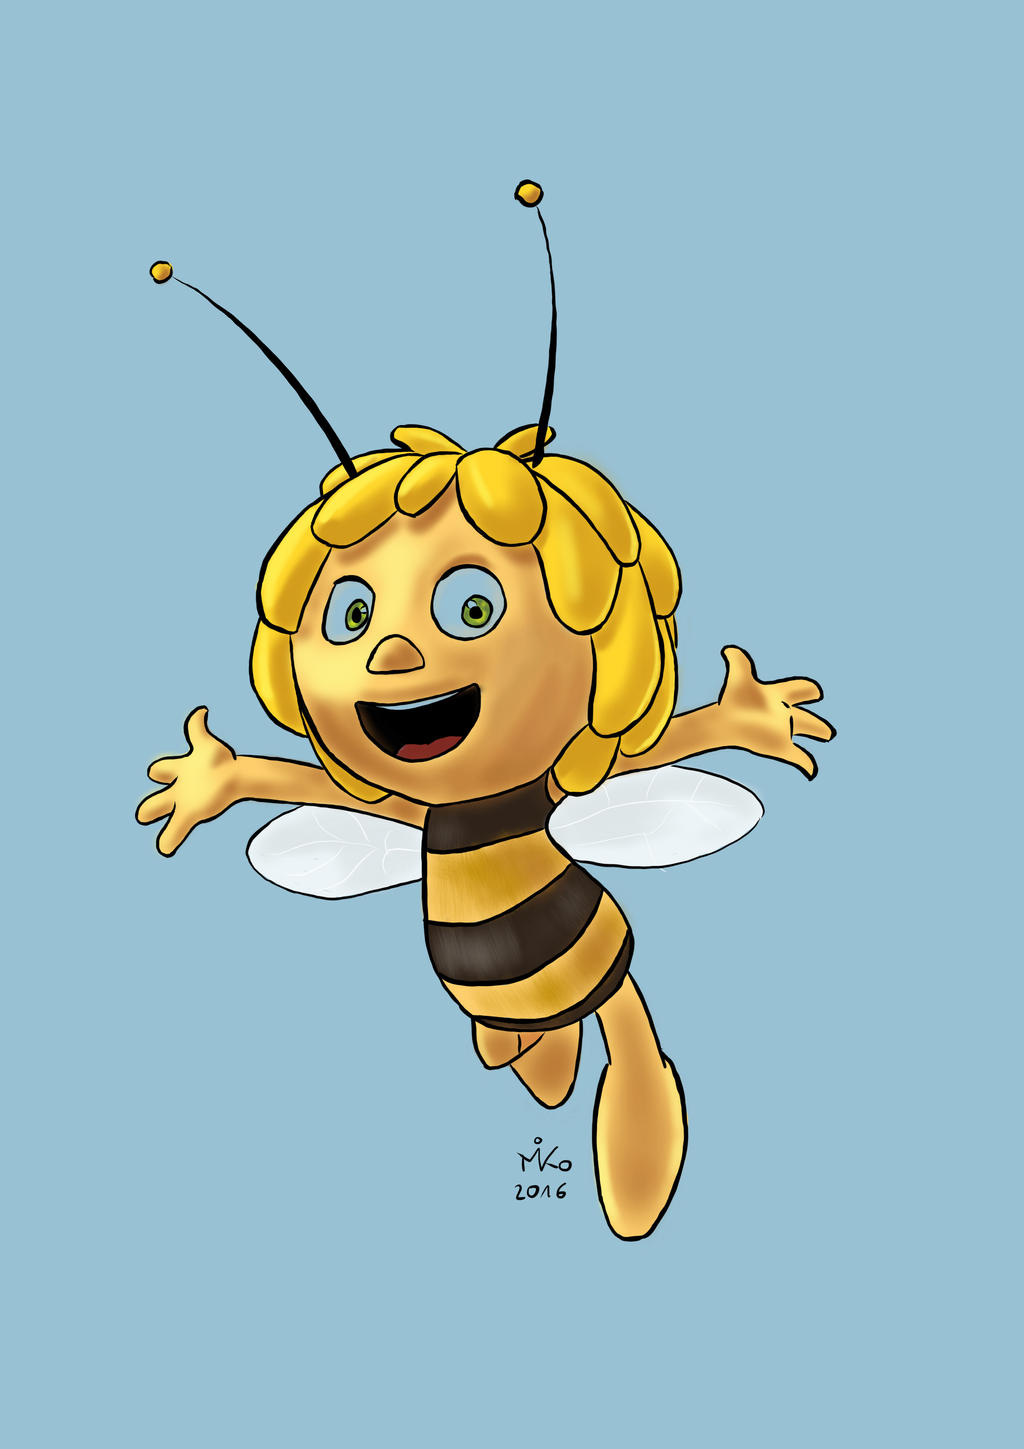 Maya the bee by moonrock44 on DeviantArt